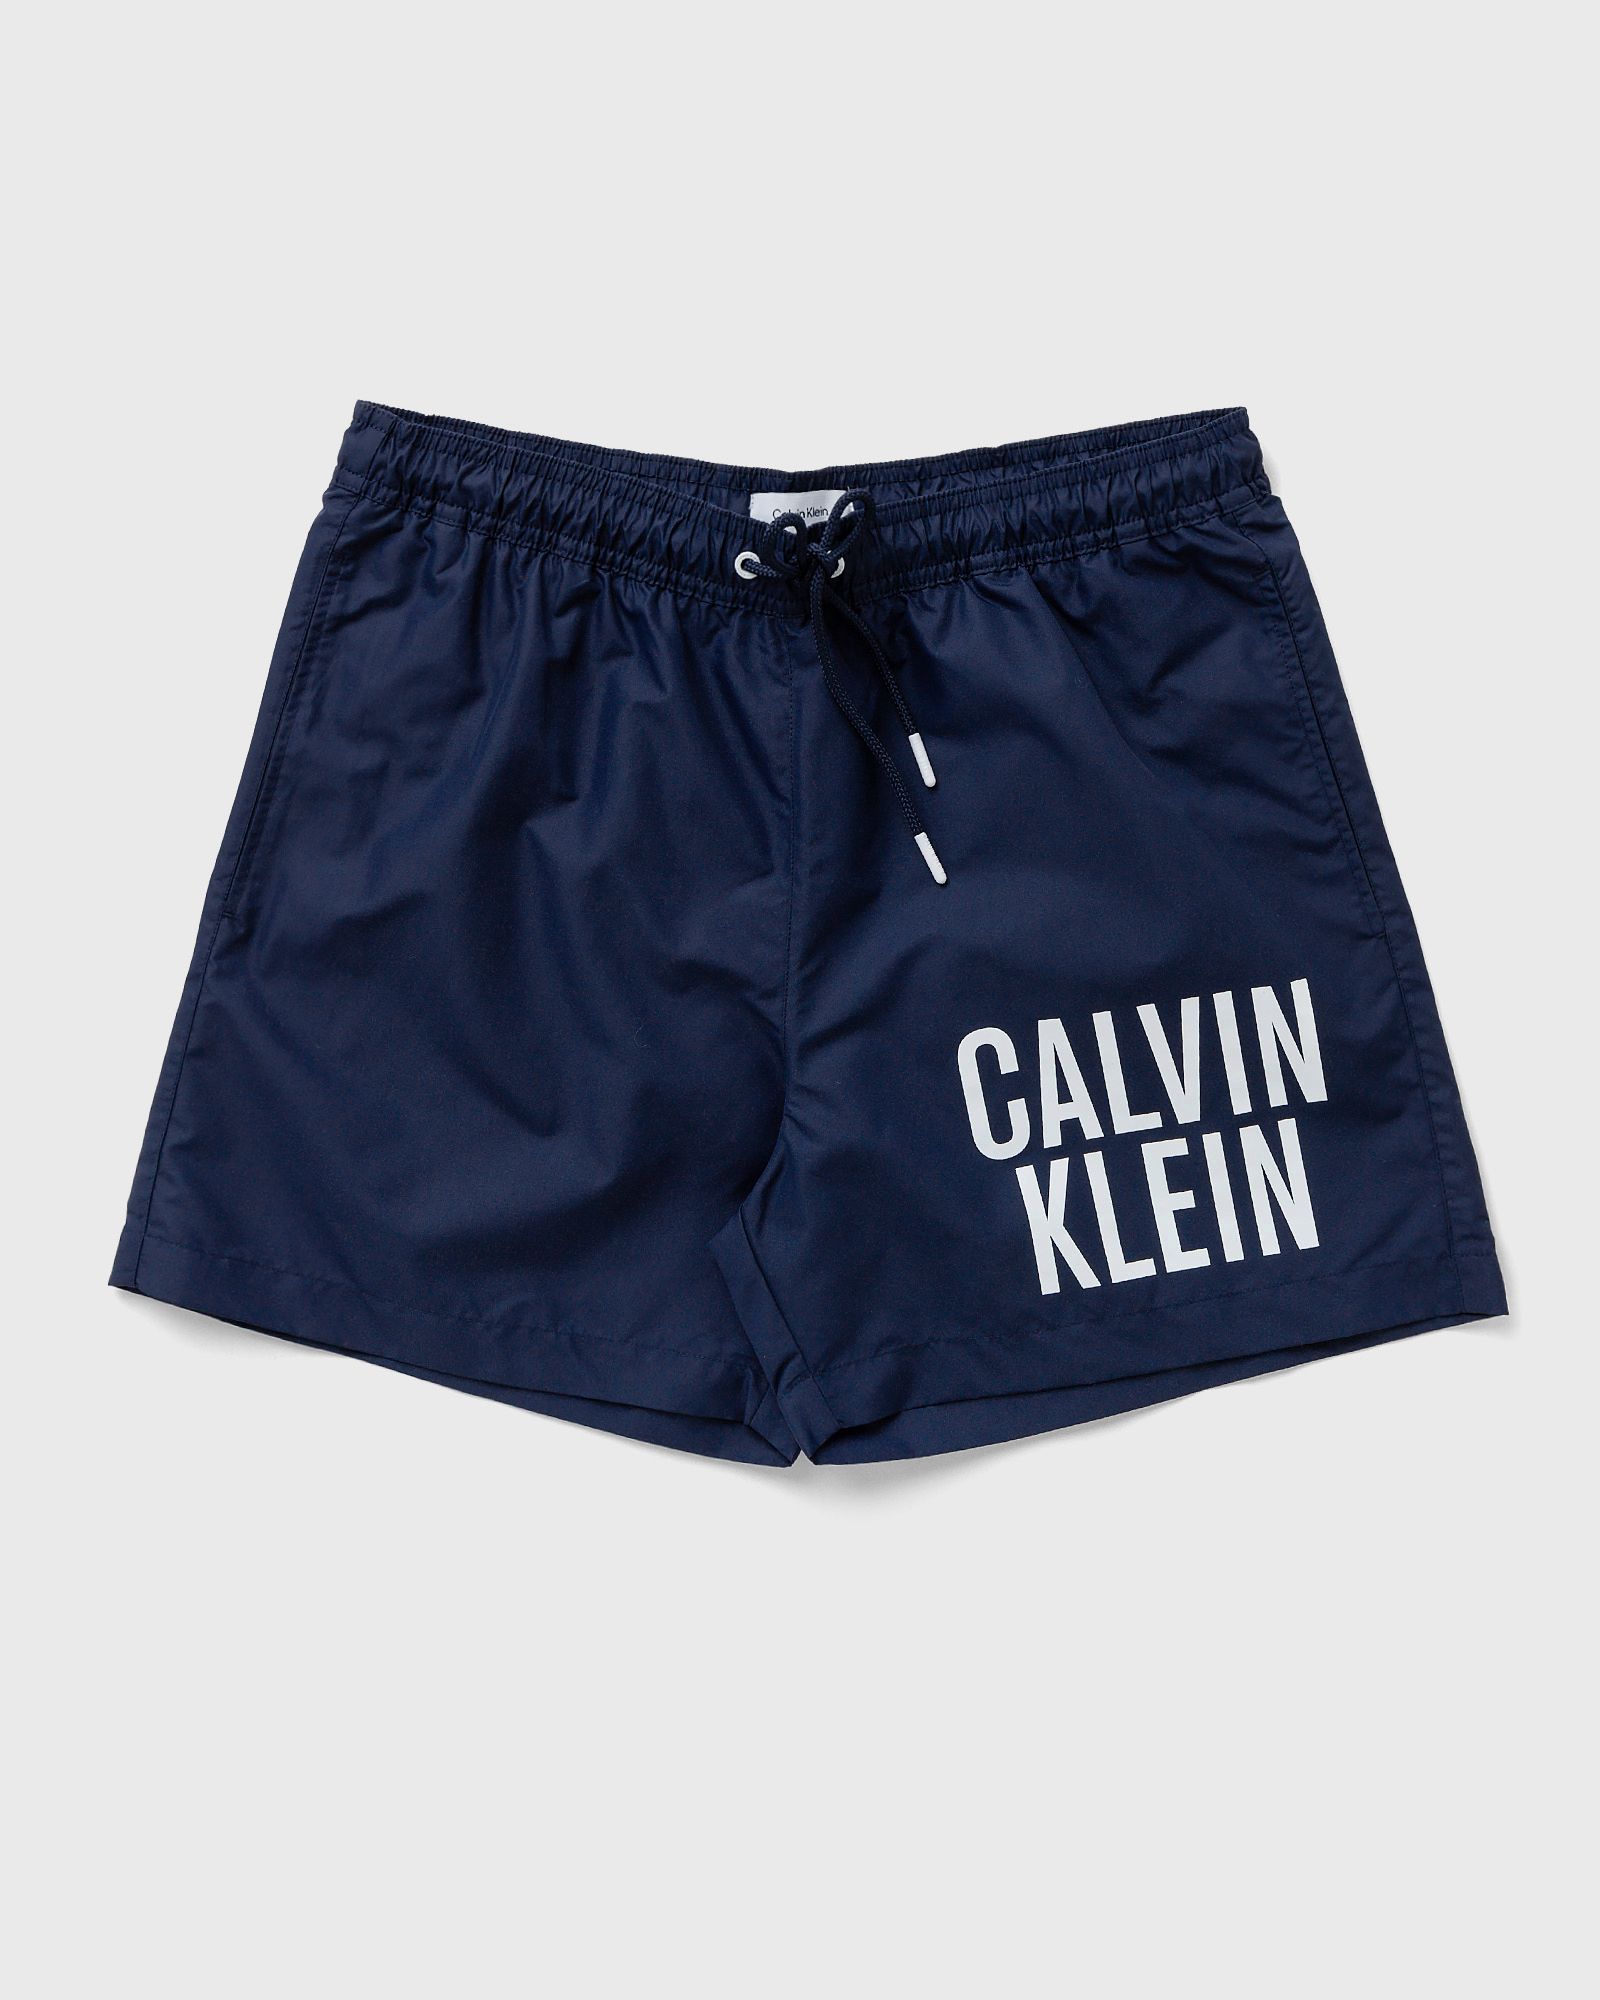 Calvin Klein Underwear - medium drawstring swimshorts men swimwear blue in größe:m